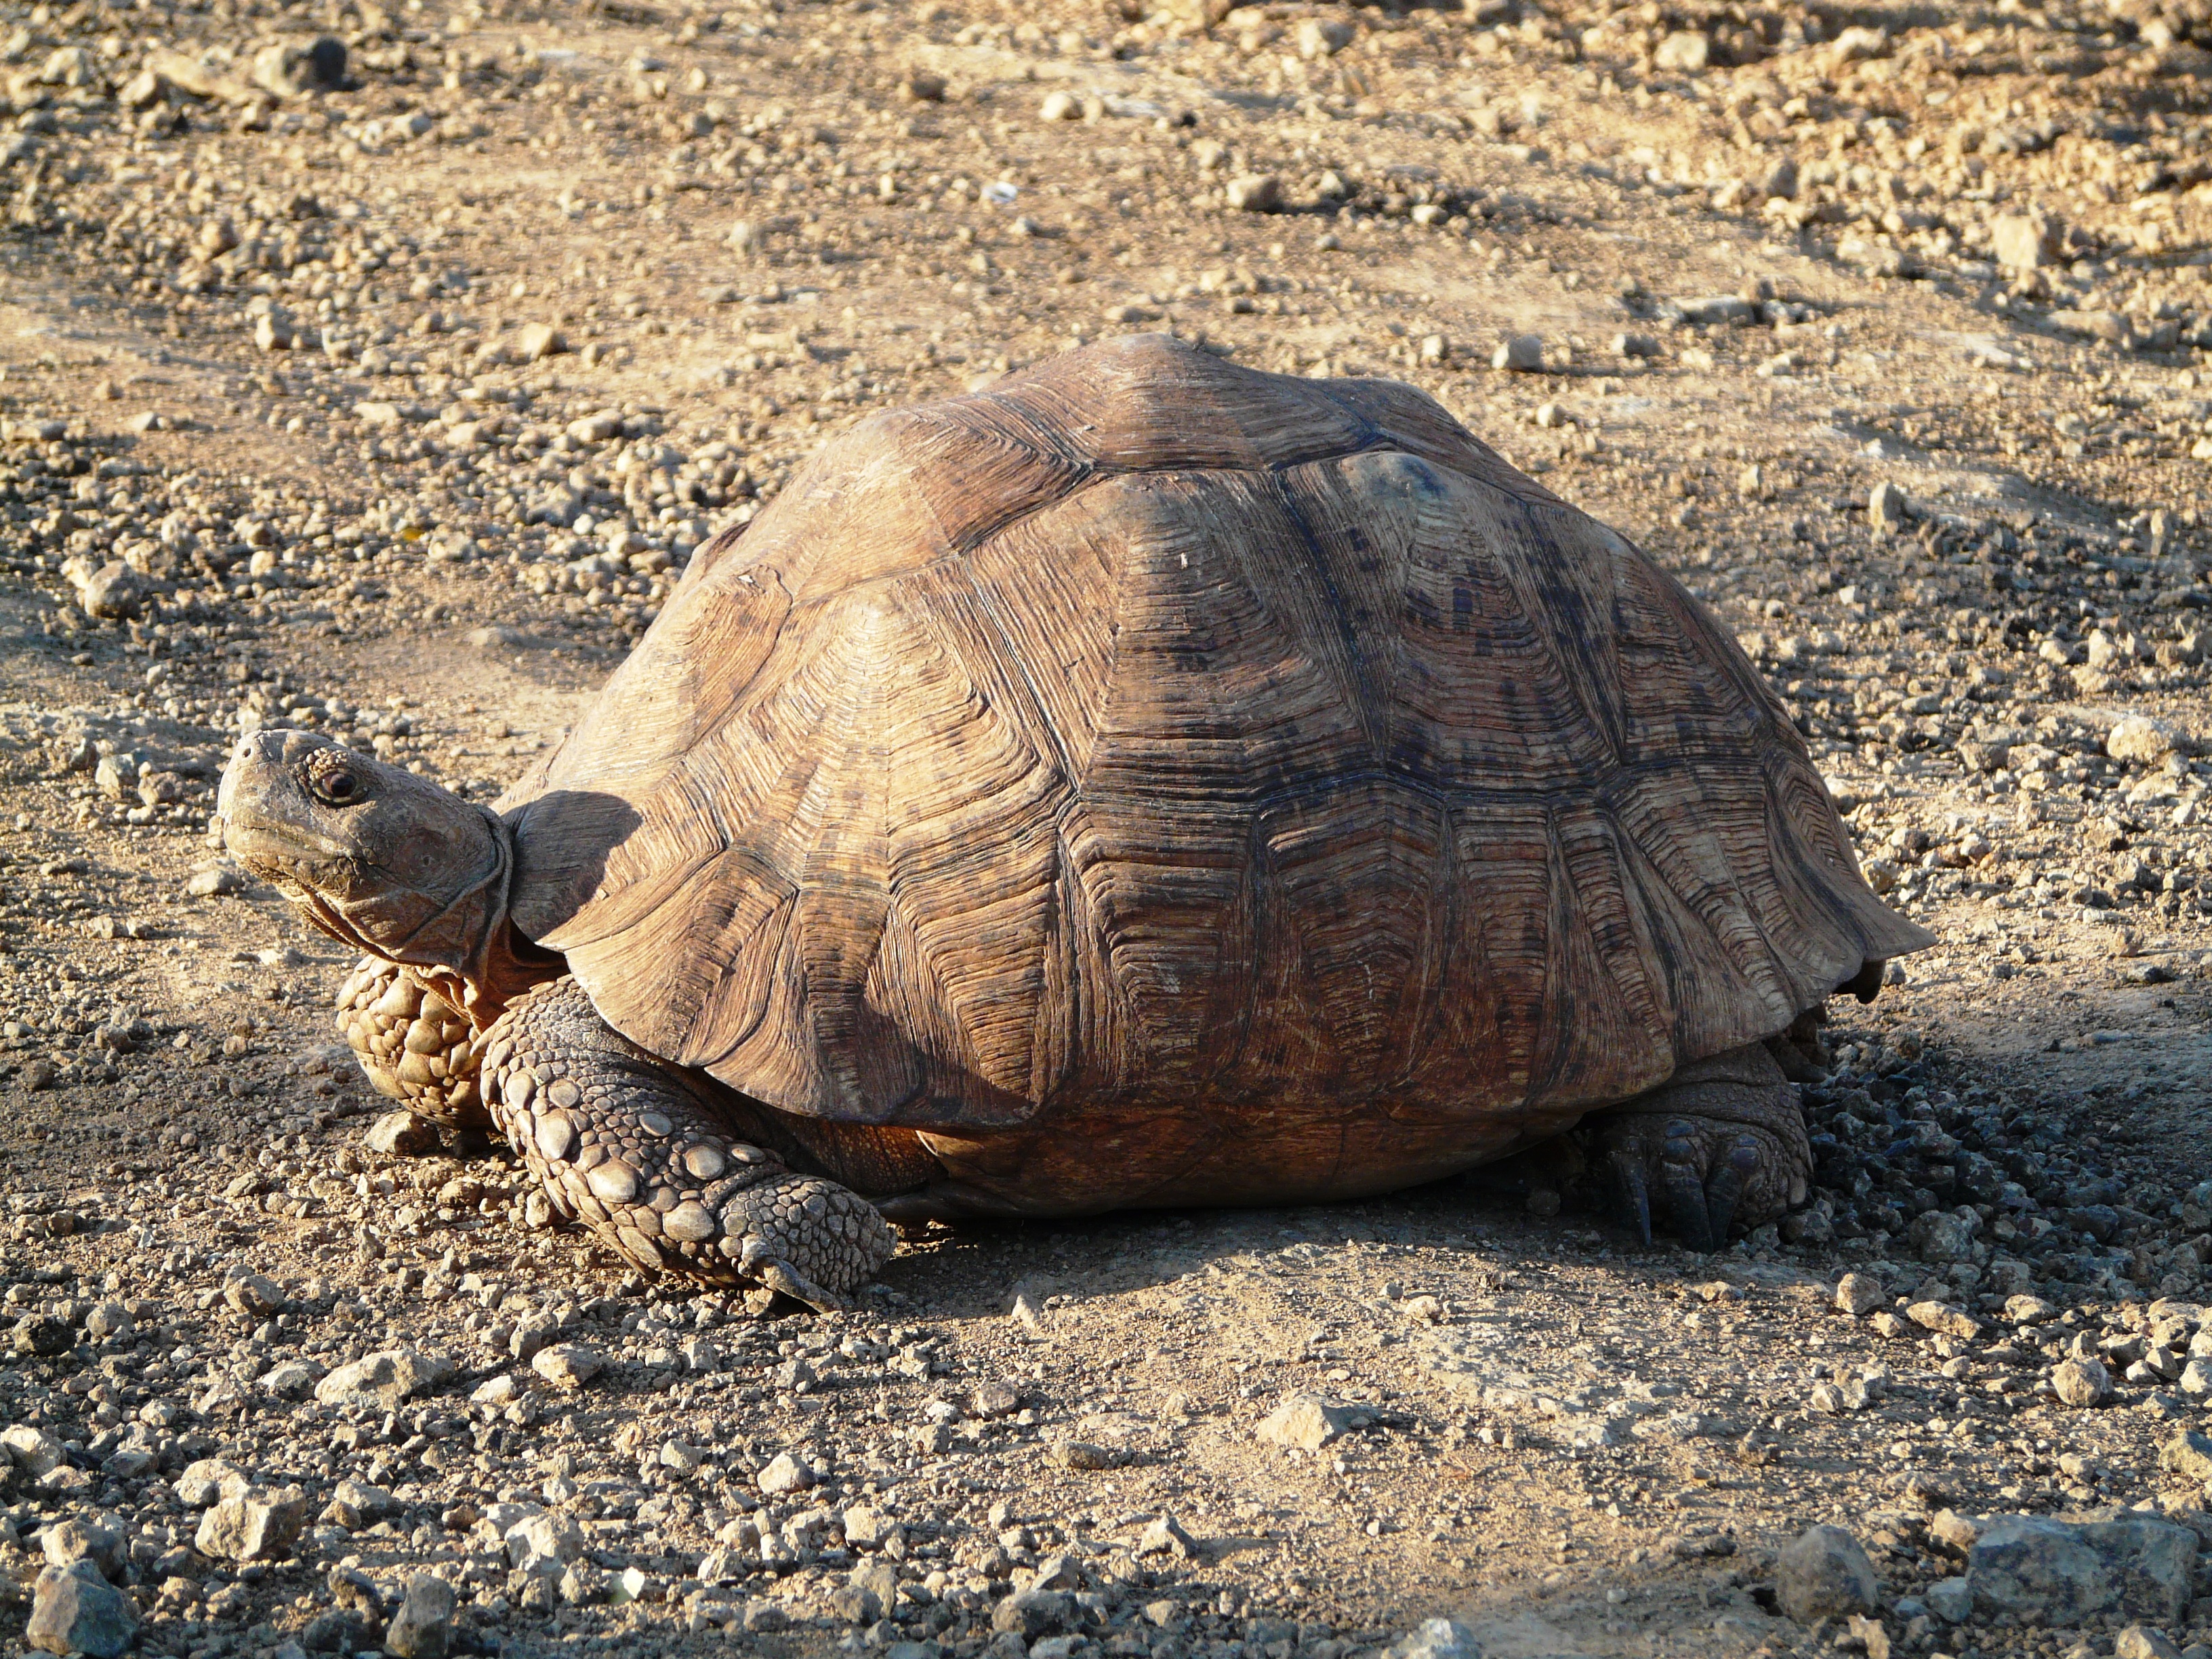 Lake Bogoria turtle, Kenya